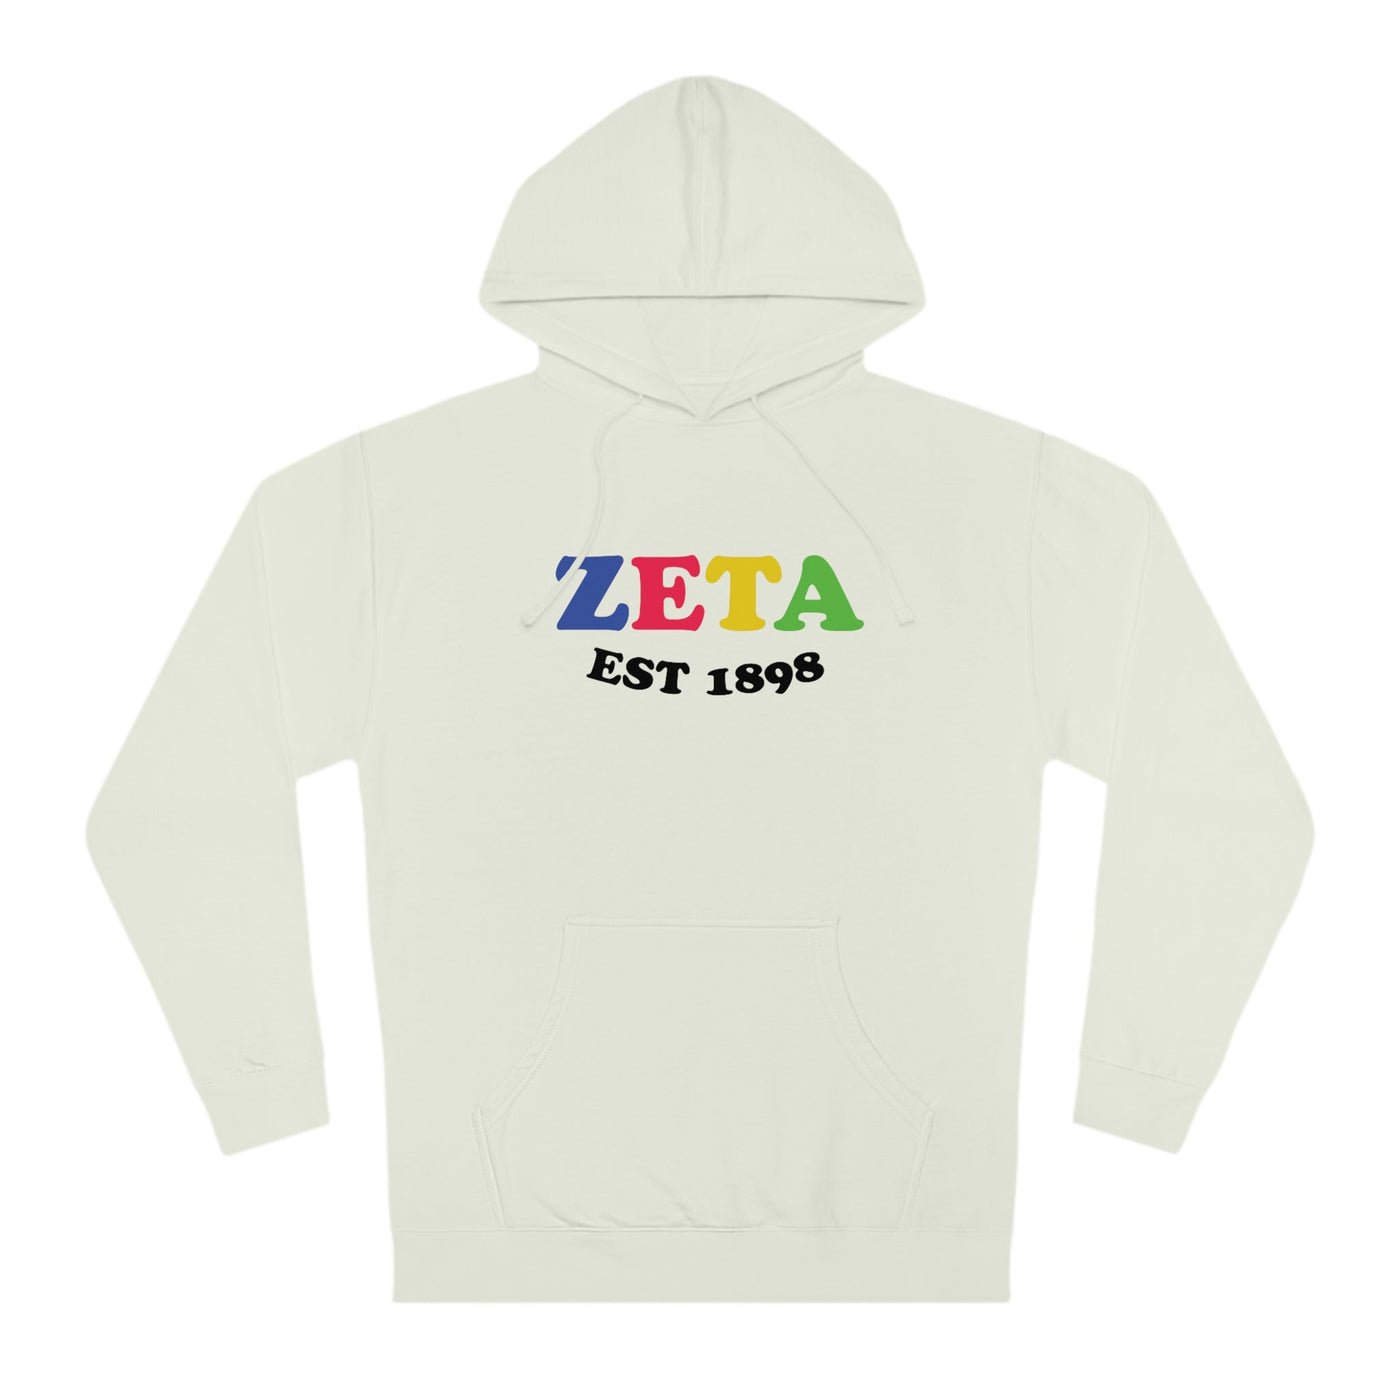 Zeta Tau Alpha Colorful Sorority Sweatshirt Zeta Hoodie